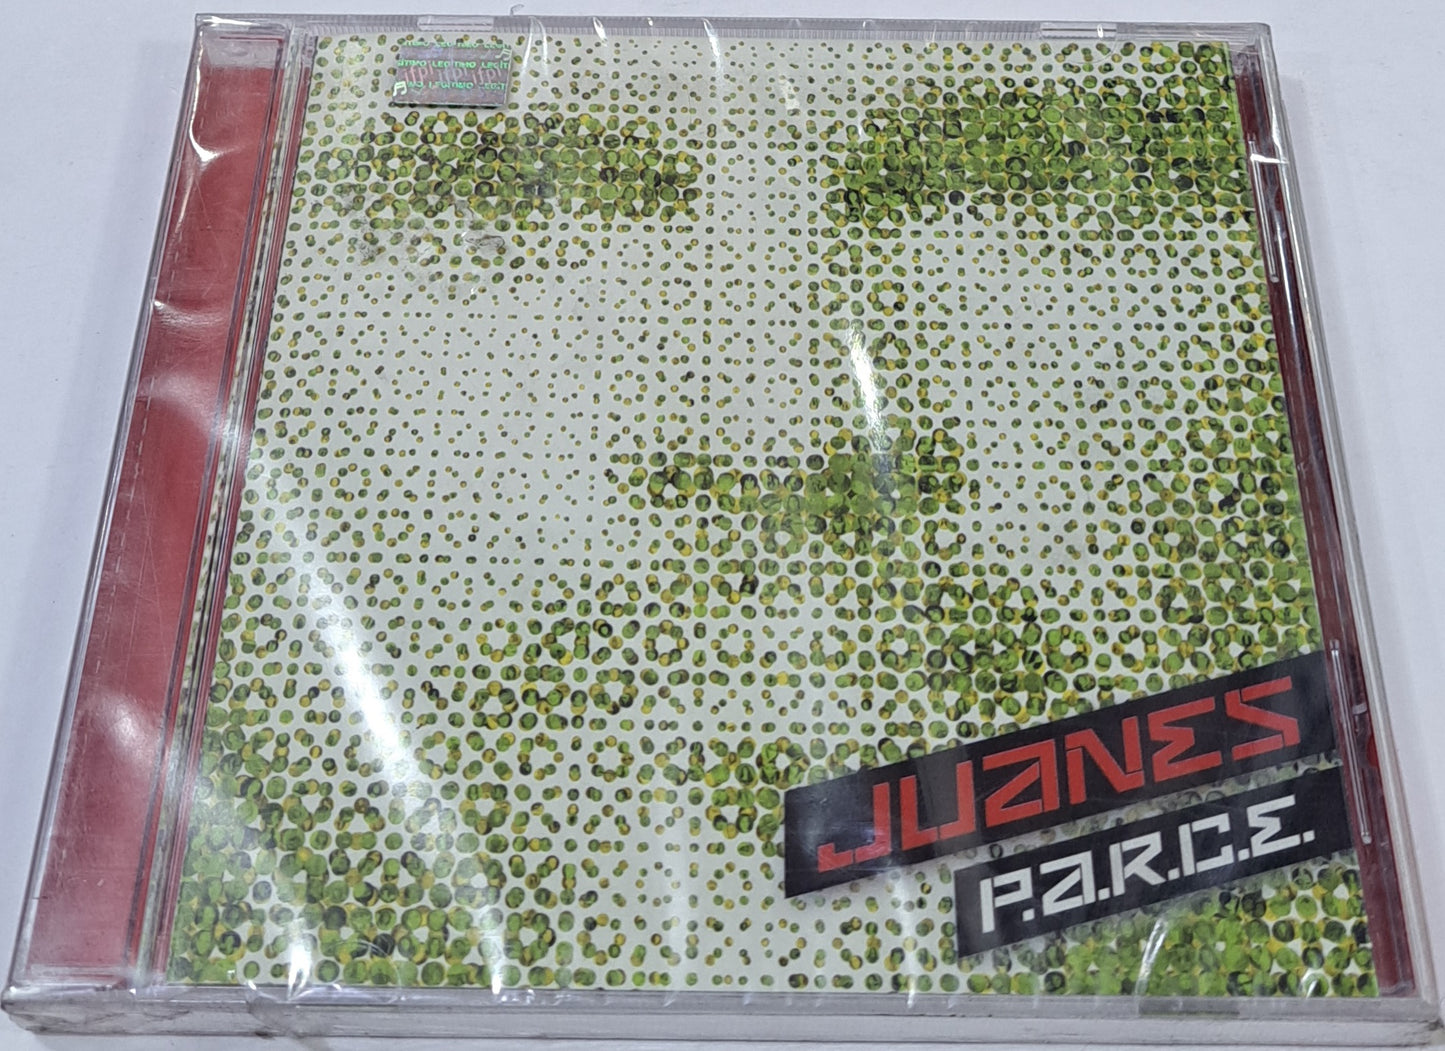 JUANES - P.A.R.C.E CD